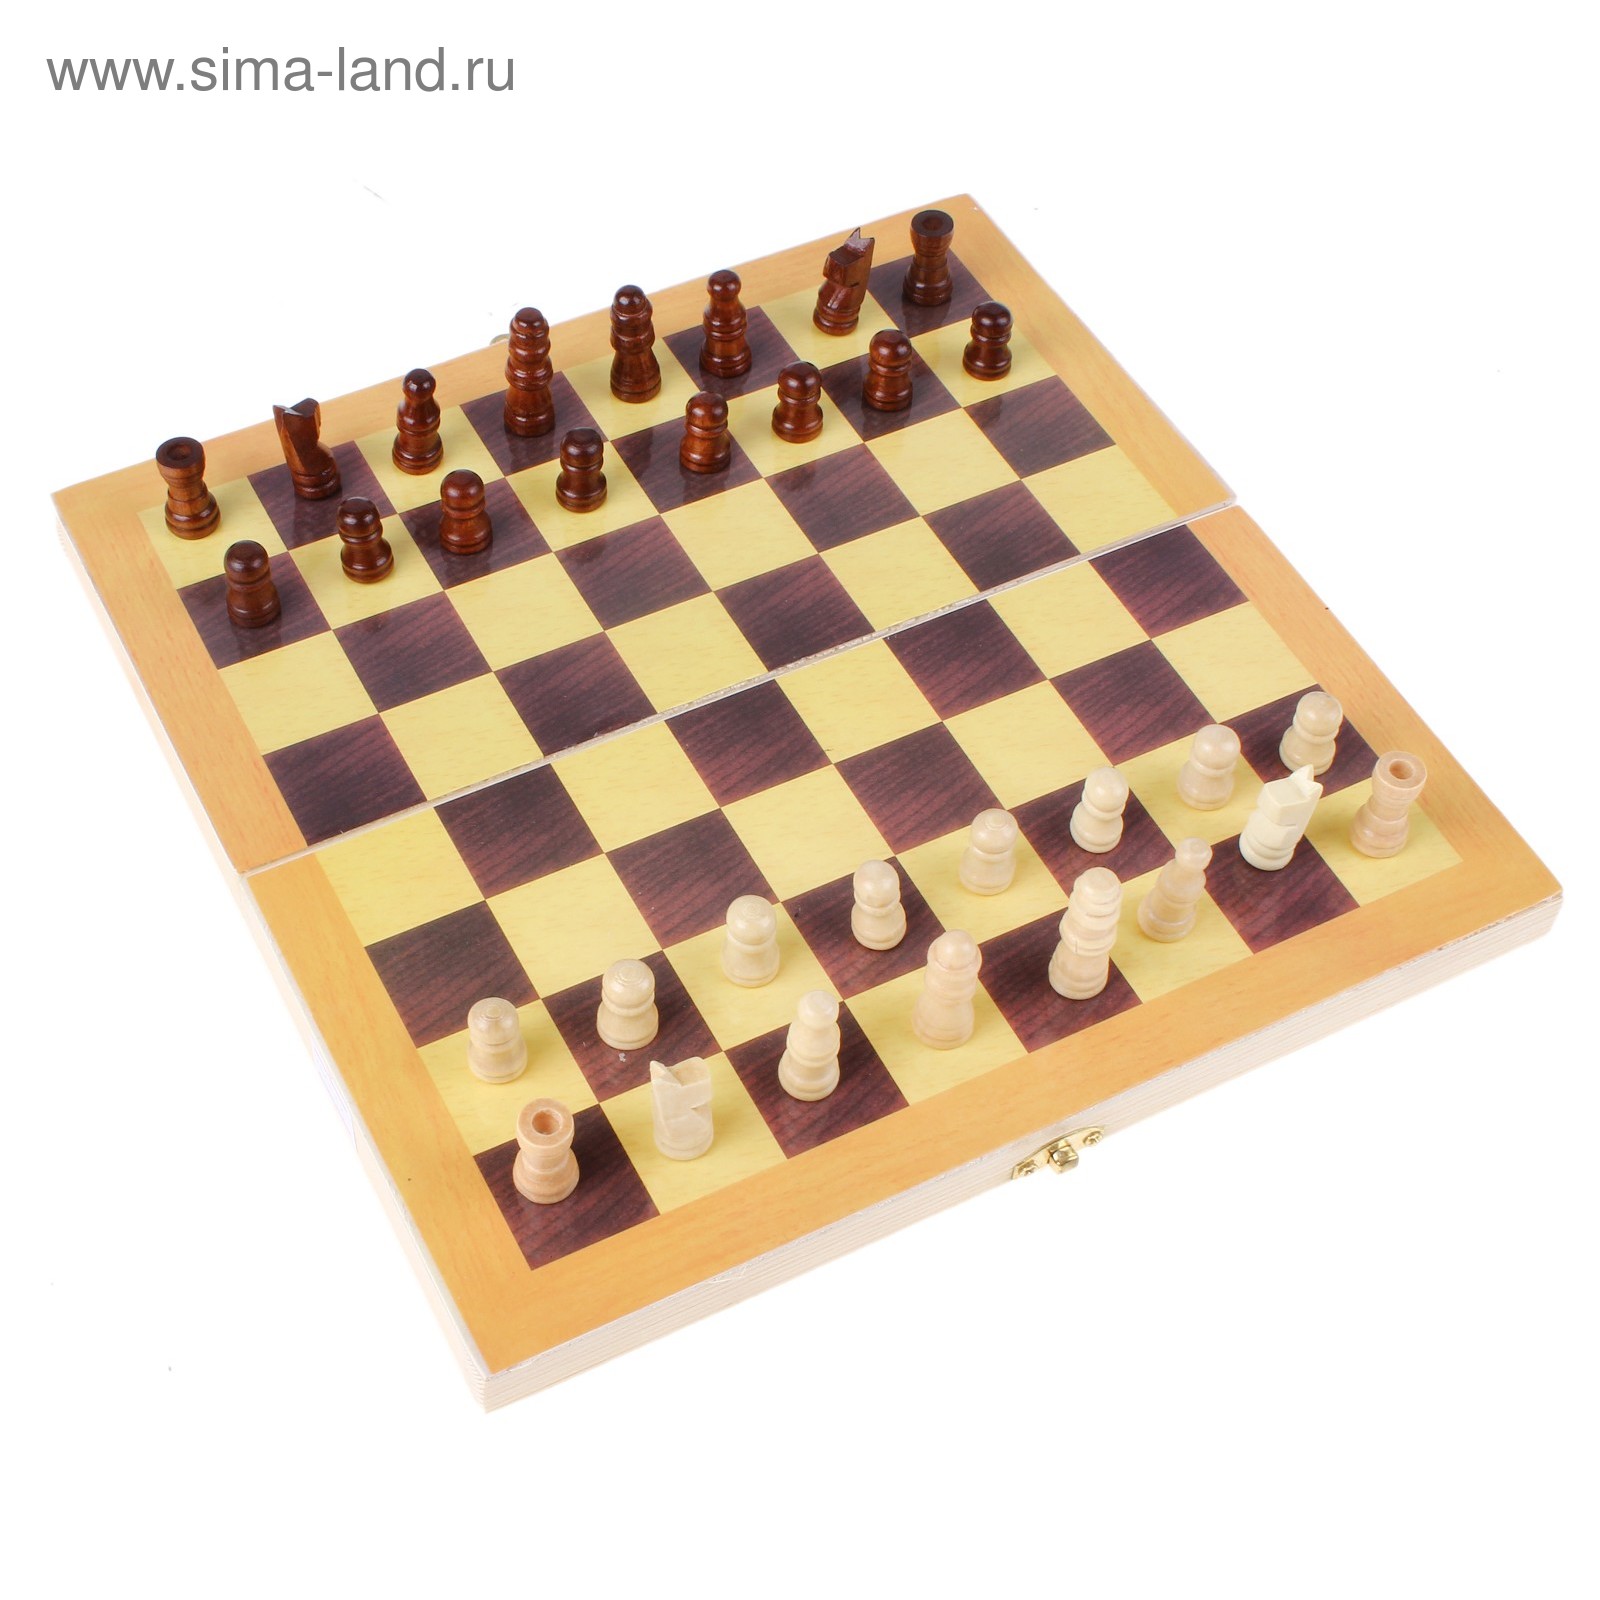 Шахматы настольные, поле 24 × 24 см, УЦЕНКА (перекосы доски)